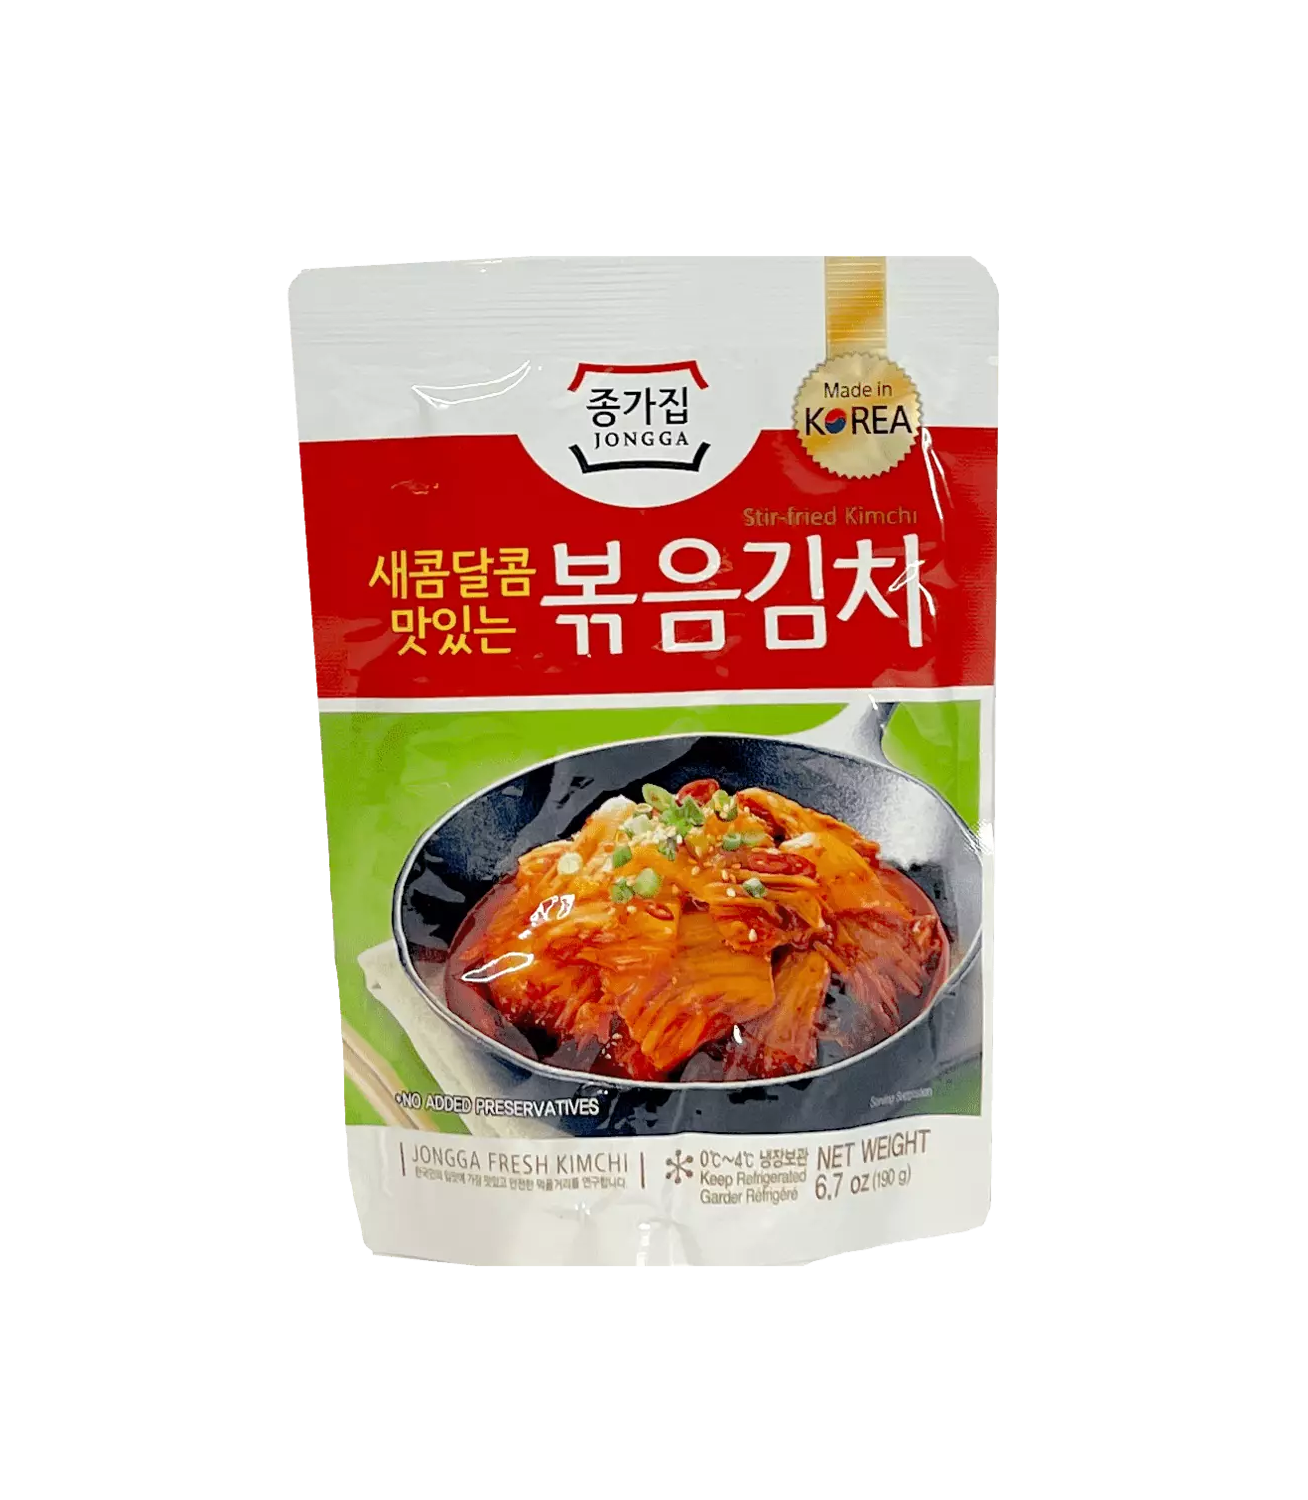 烤泡菜 190g Chongga 韓國